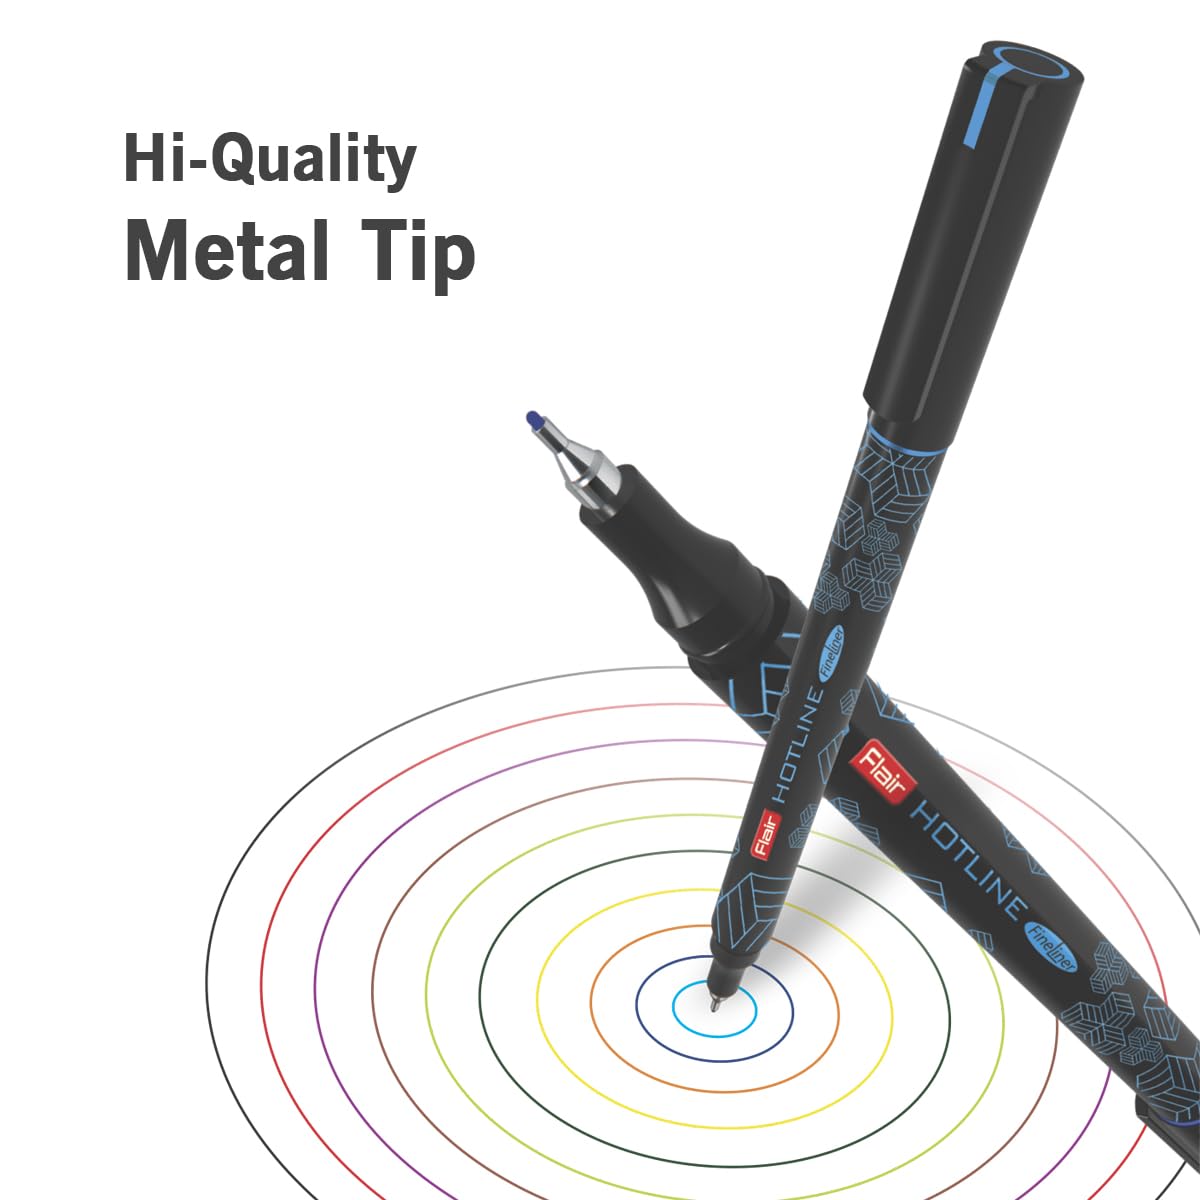 FLAIR Hotline Fineliner Metal Tip Pen